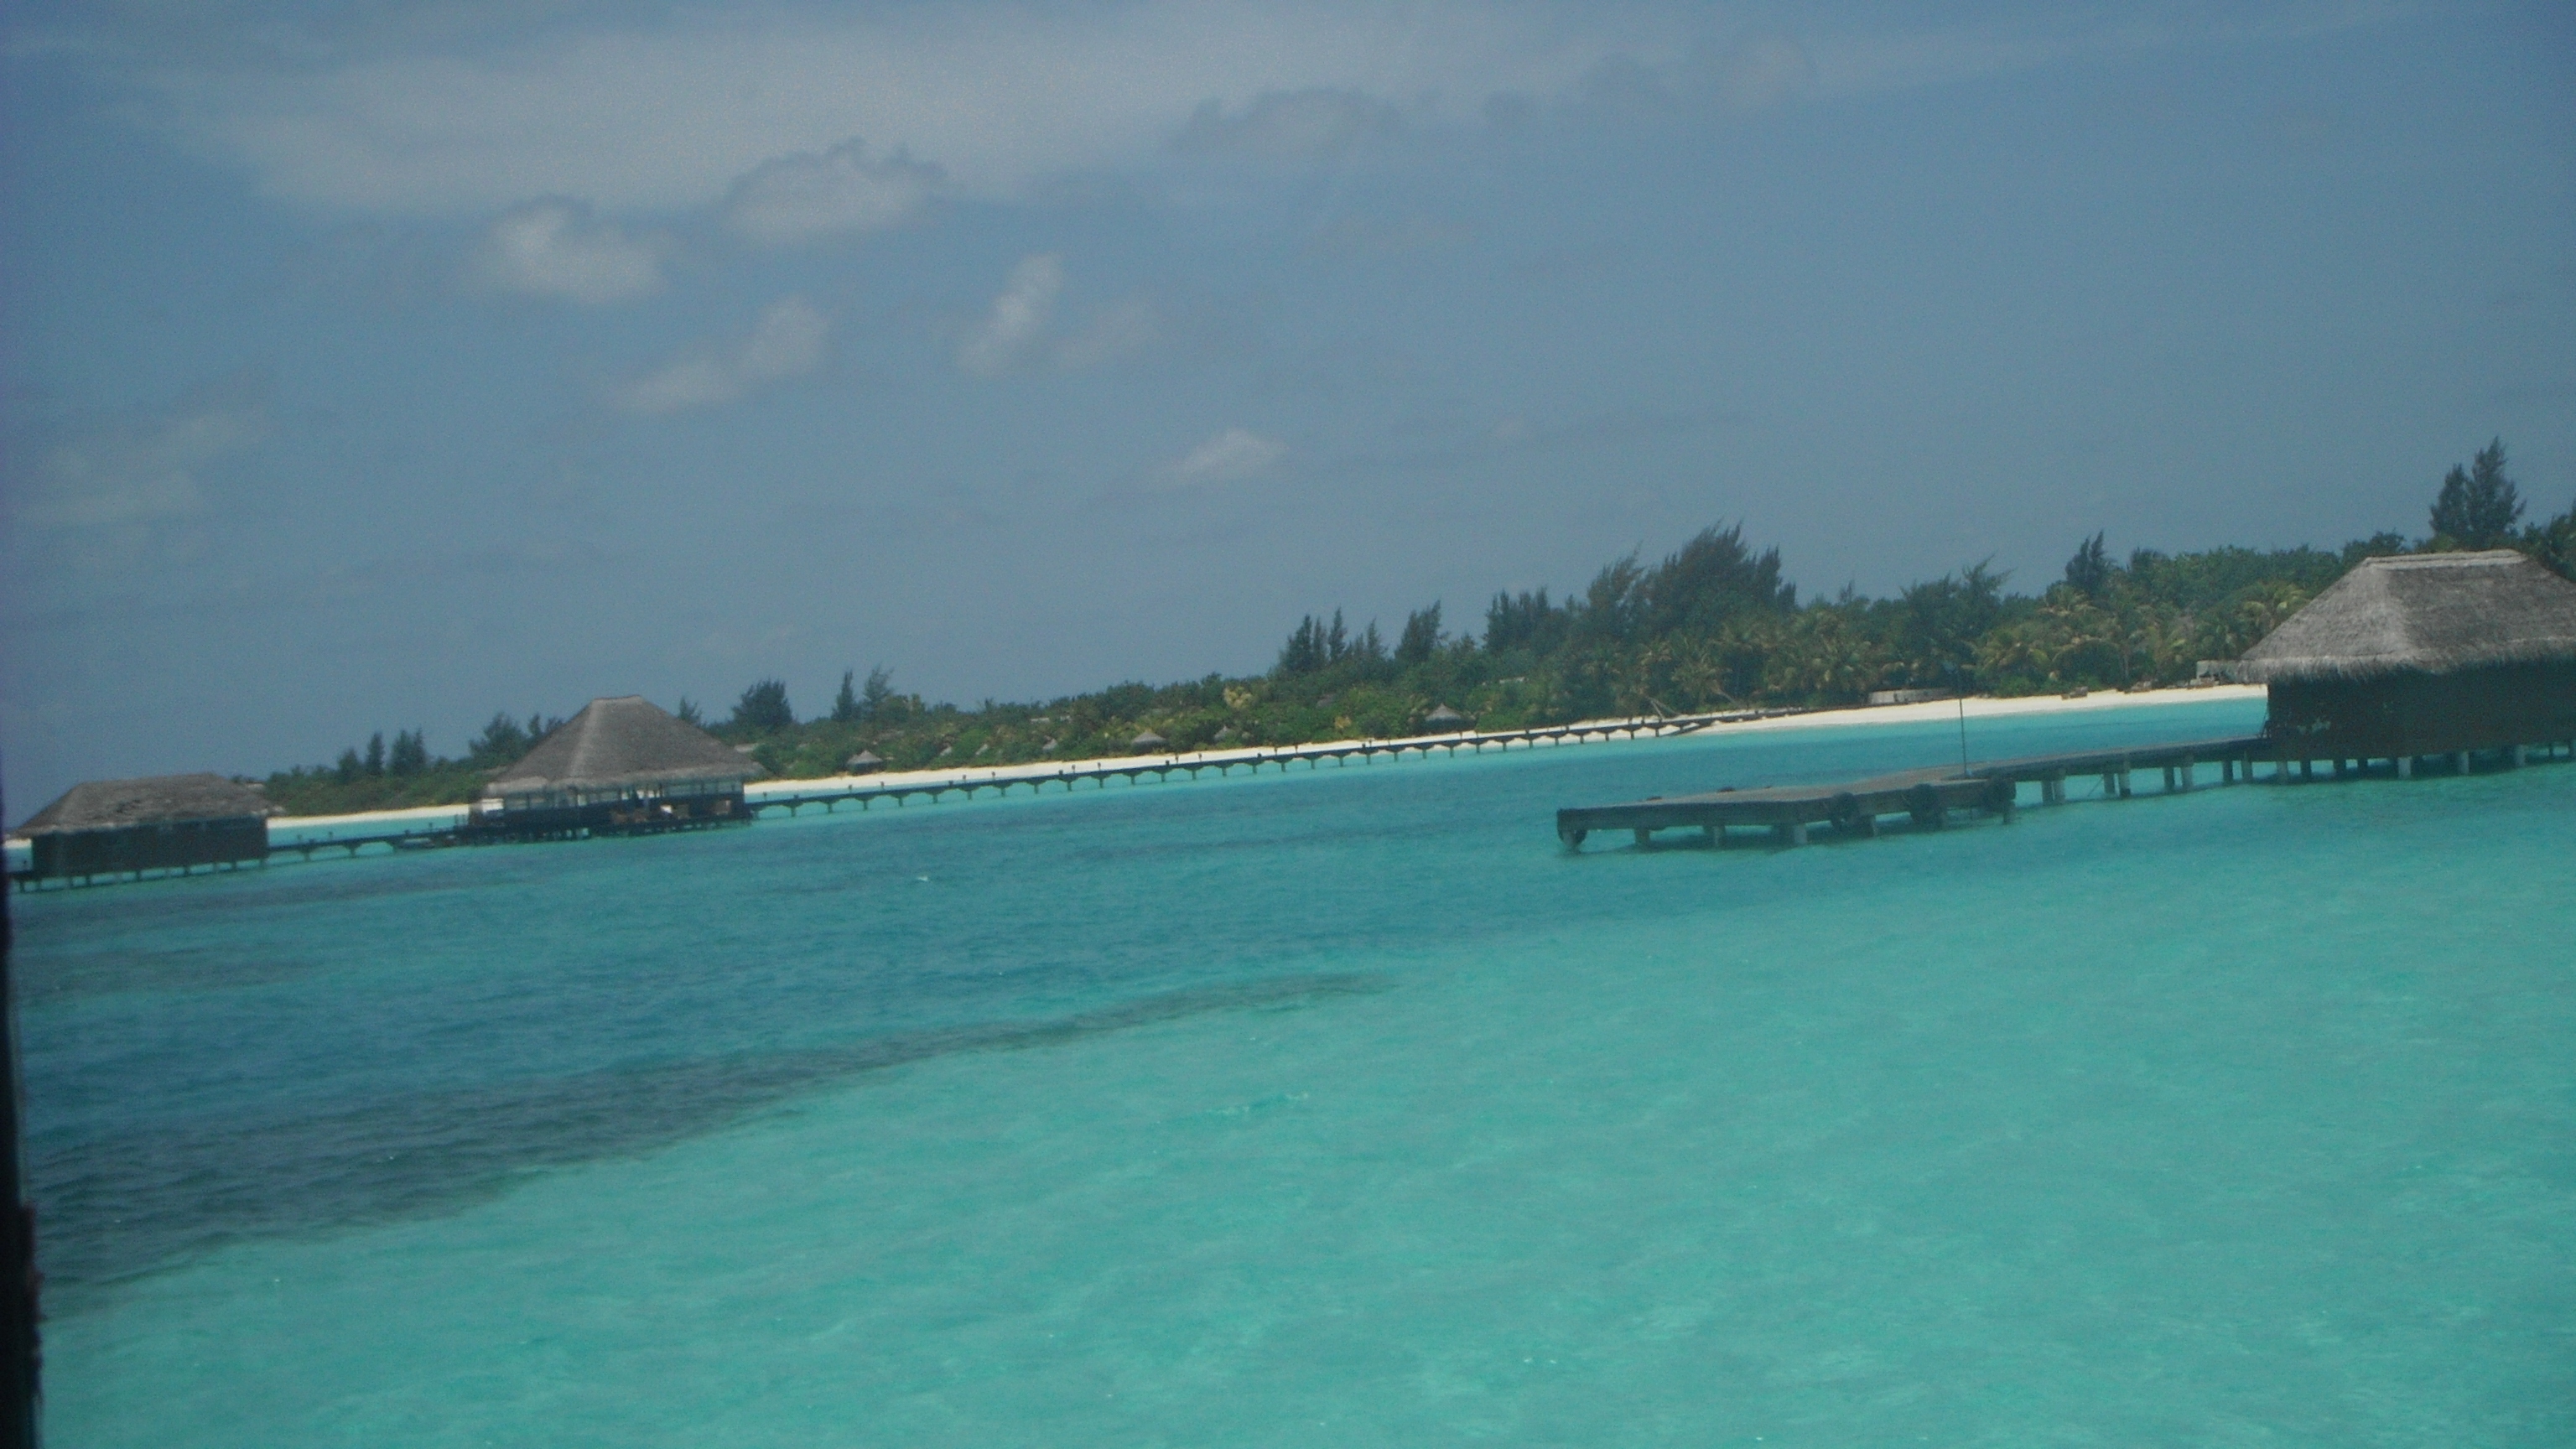 Kanuhura Resort, Maldivas